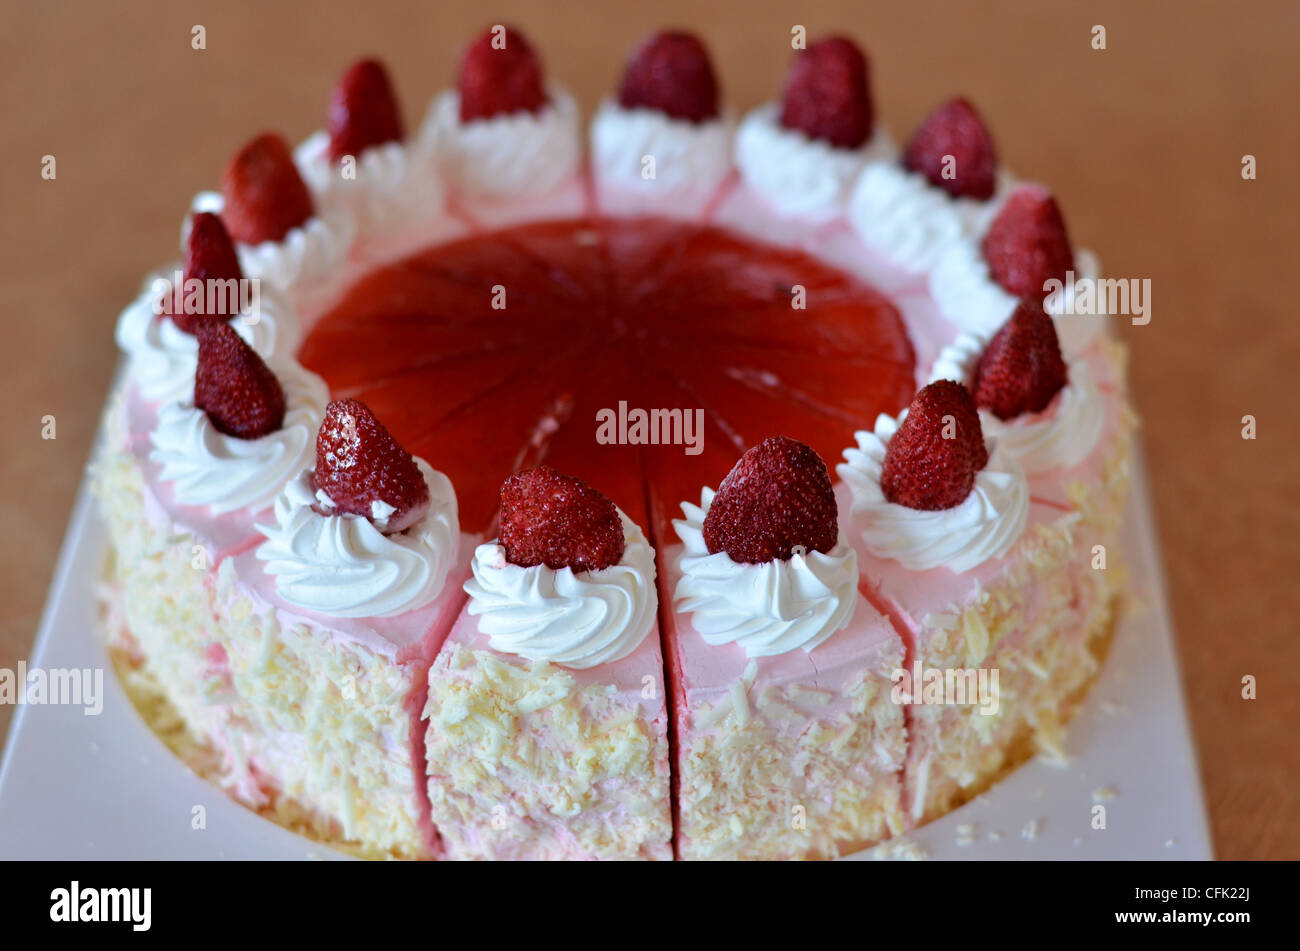 strawberry ice cream cake , Beautiful decorated fruit cake Stock Photo